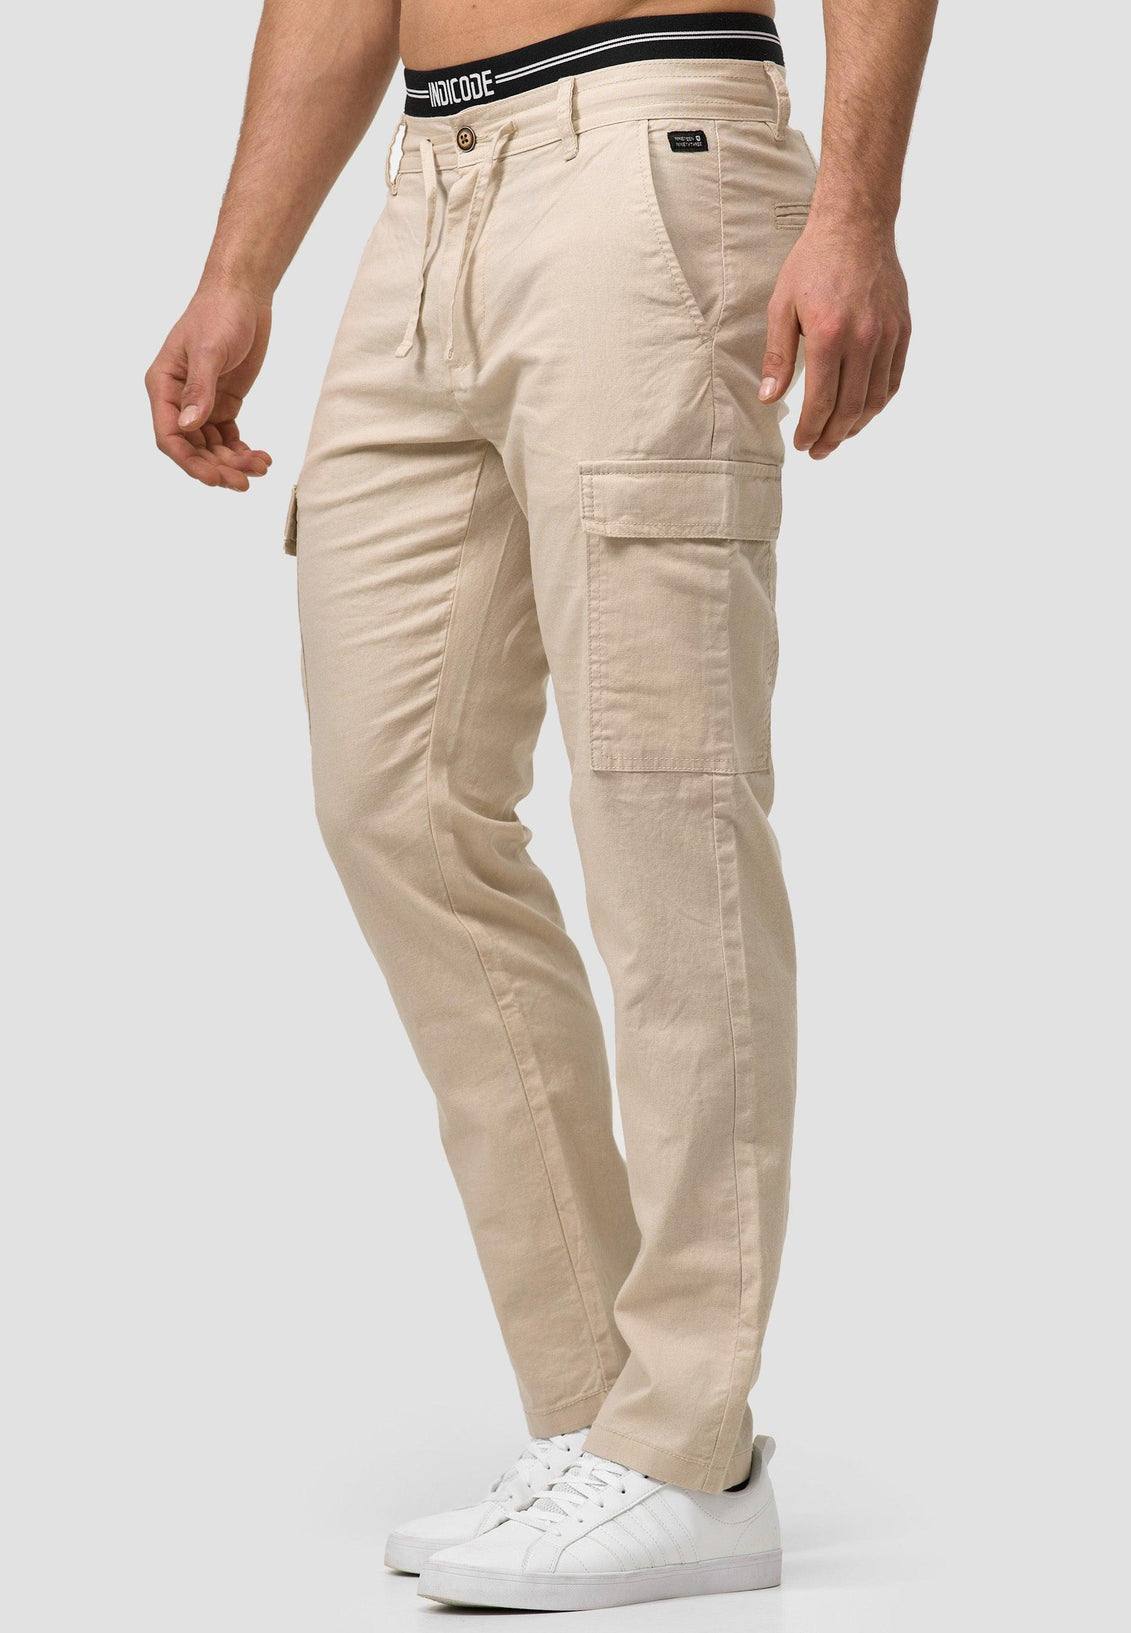 Buy Navy Blue Trousers  Pants for Men by Hubberholme Online  Ajiocom